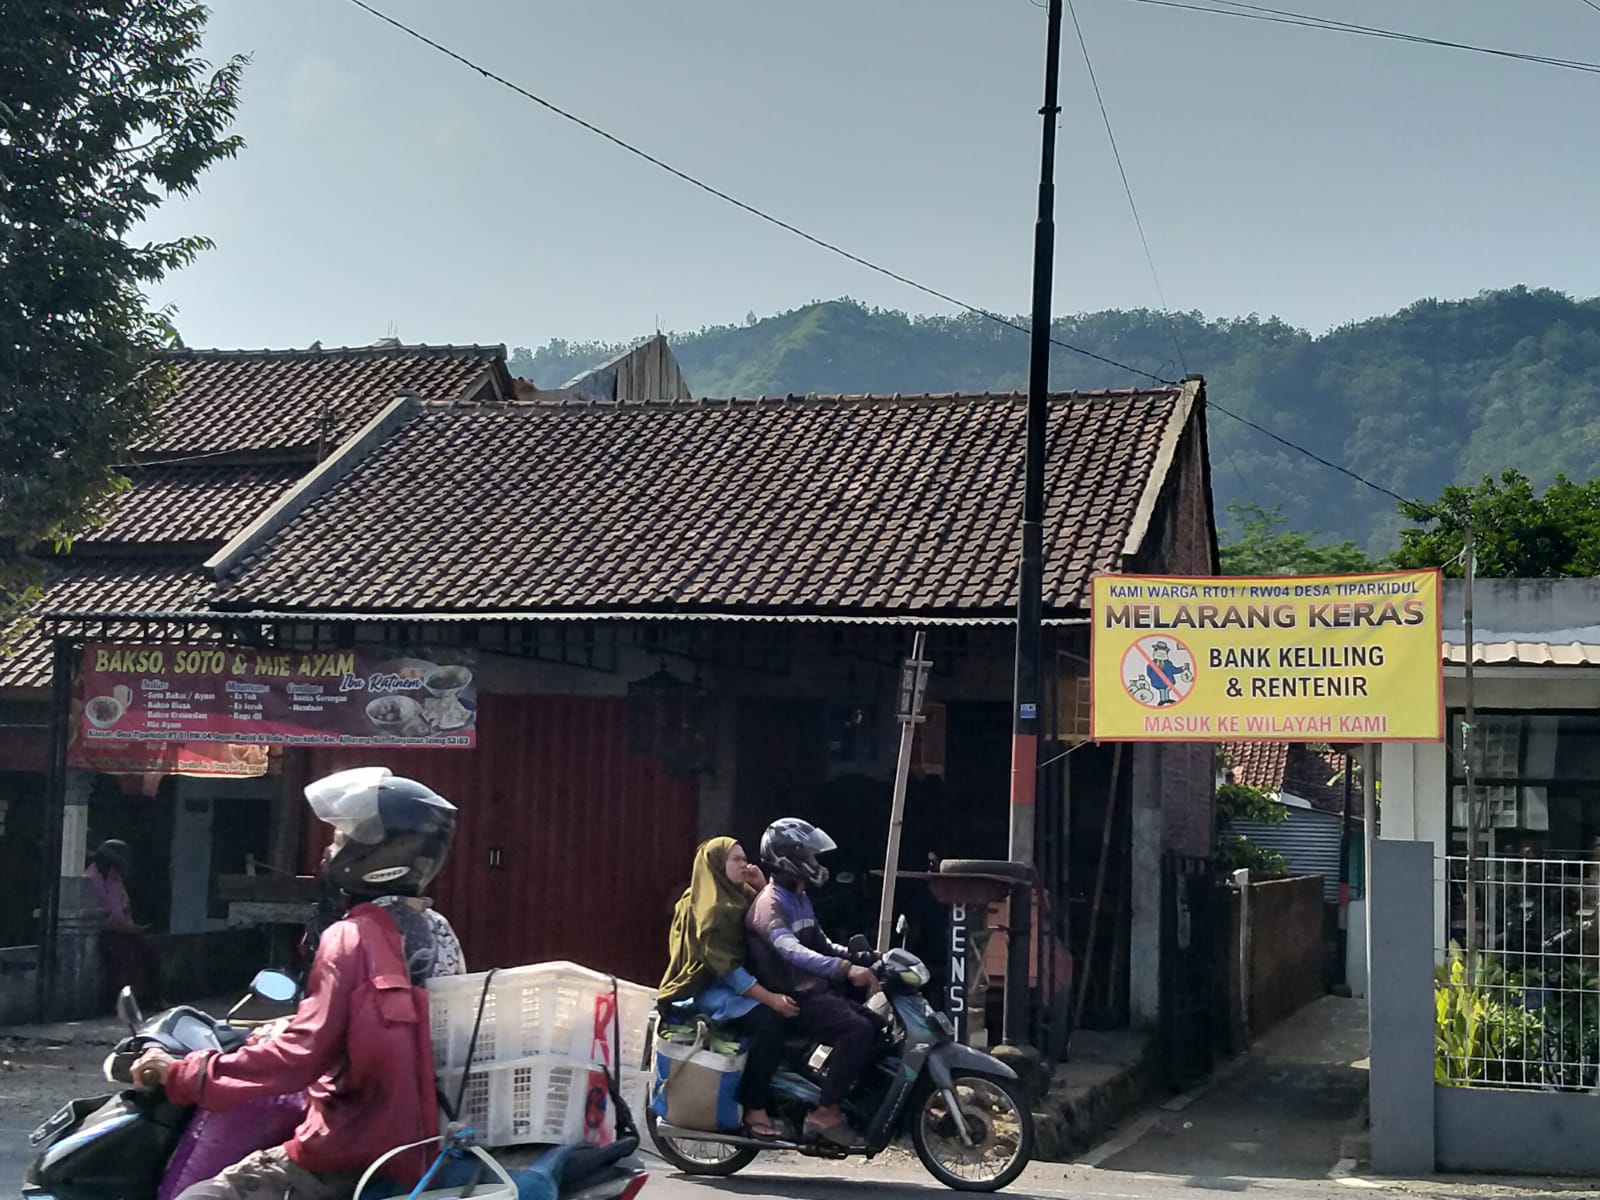 Bank Keliling dan Rentenir Dilarang Keras di Desa Tipar Kidul